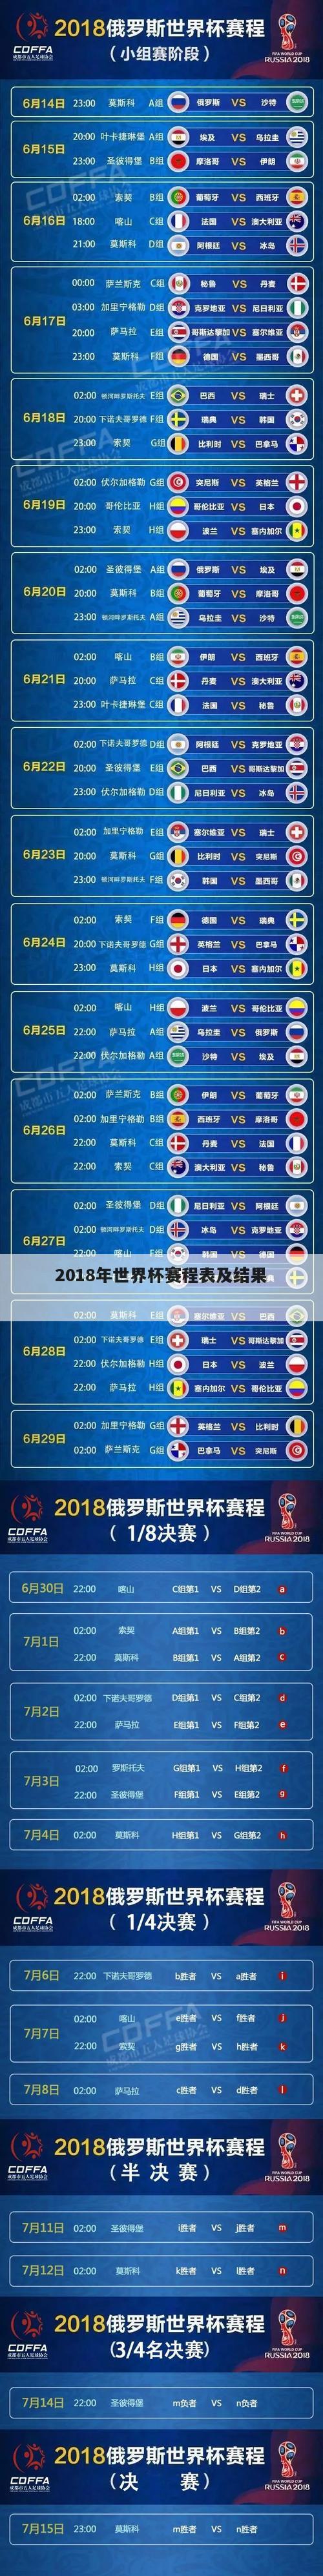 2018年世界杯赛程表及结果